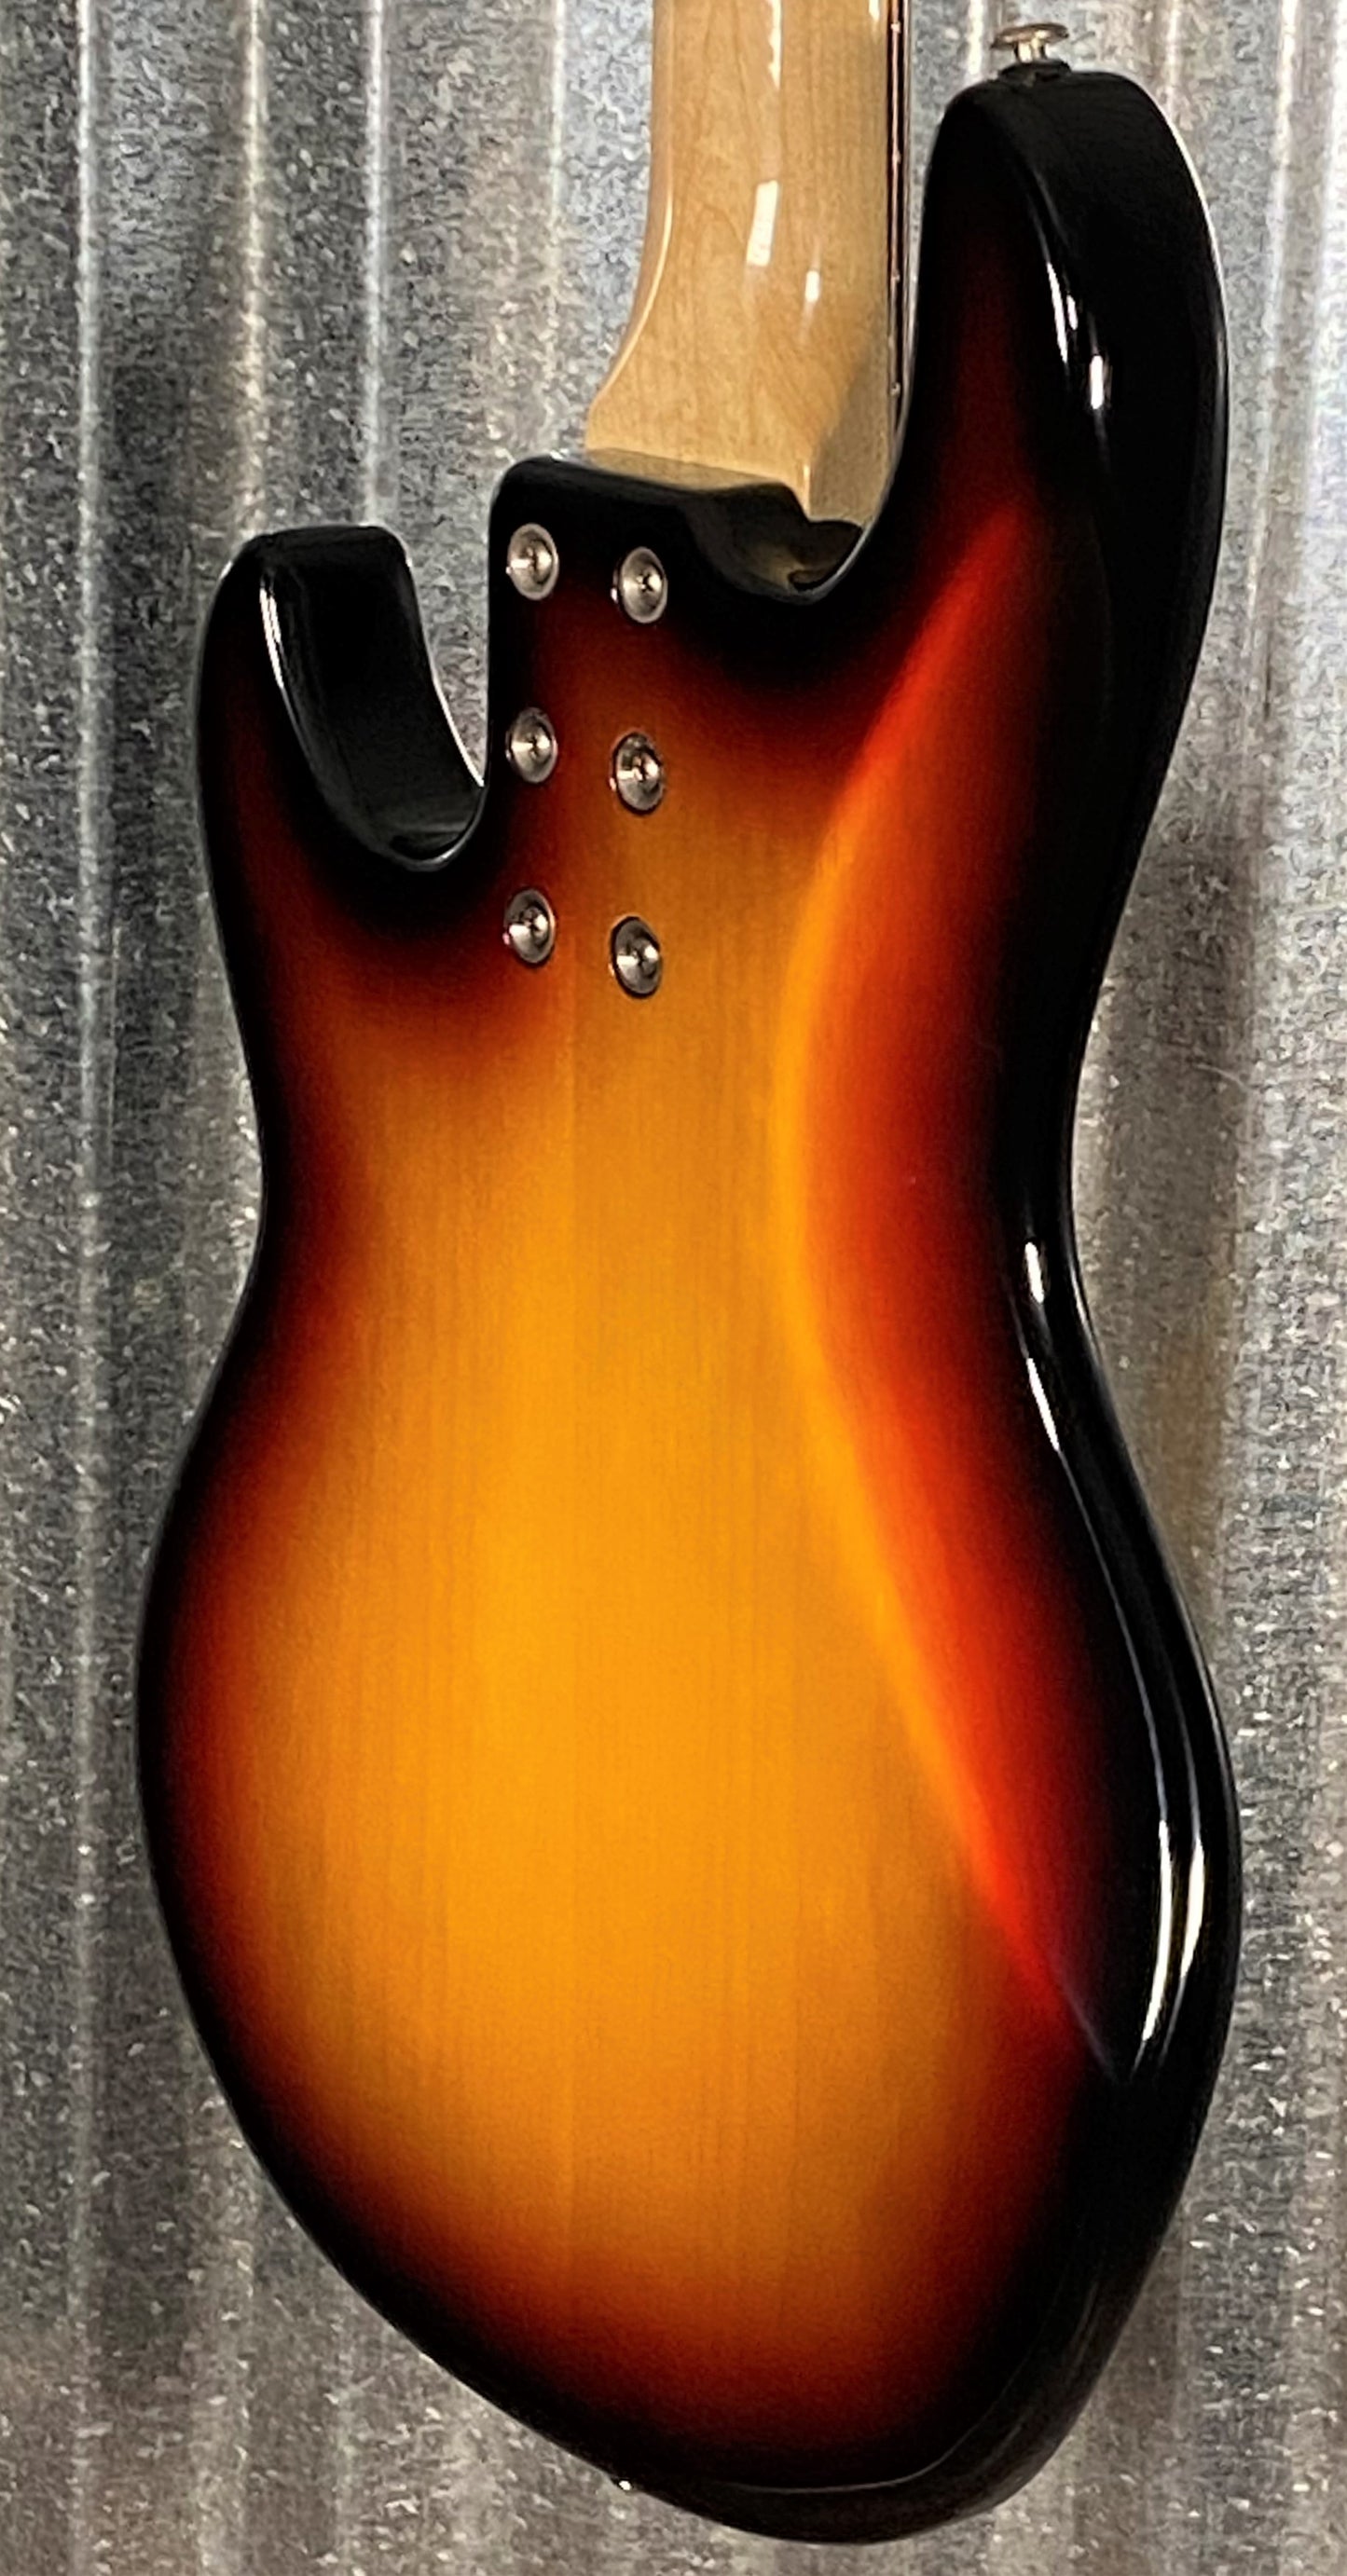 G&L USA CLF Research L-1000 S750 5 String Bass 3-Tone Sunburst & Case #4147